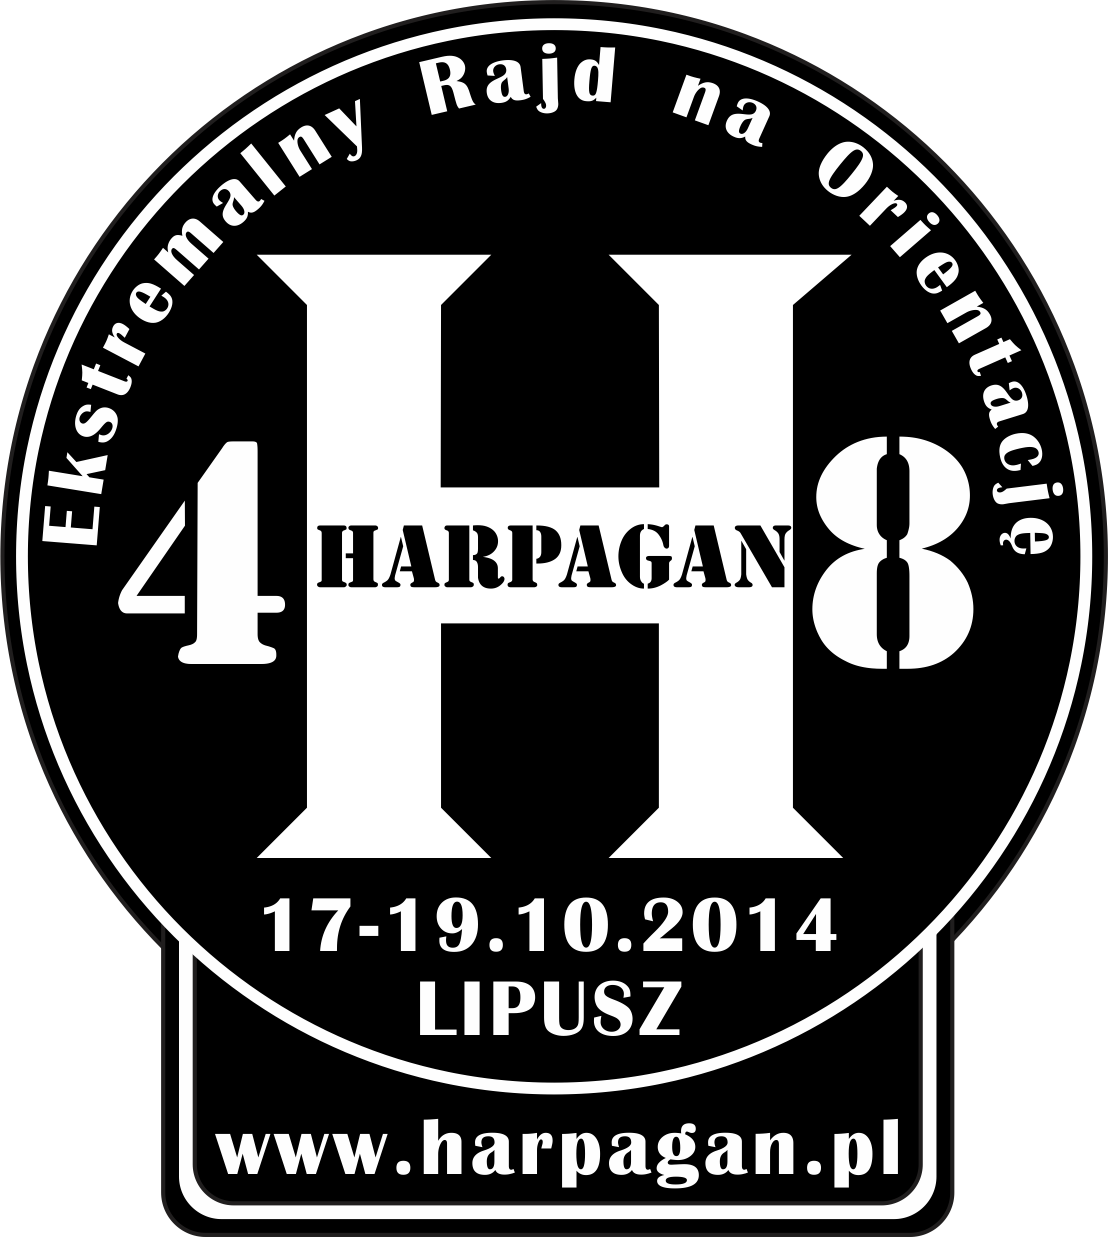 Harpagan-48 logo